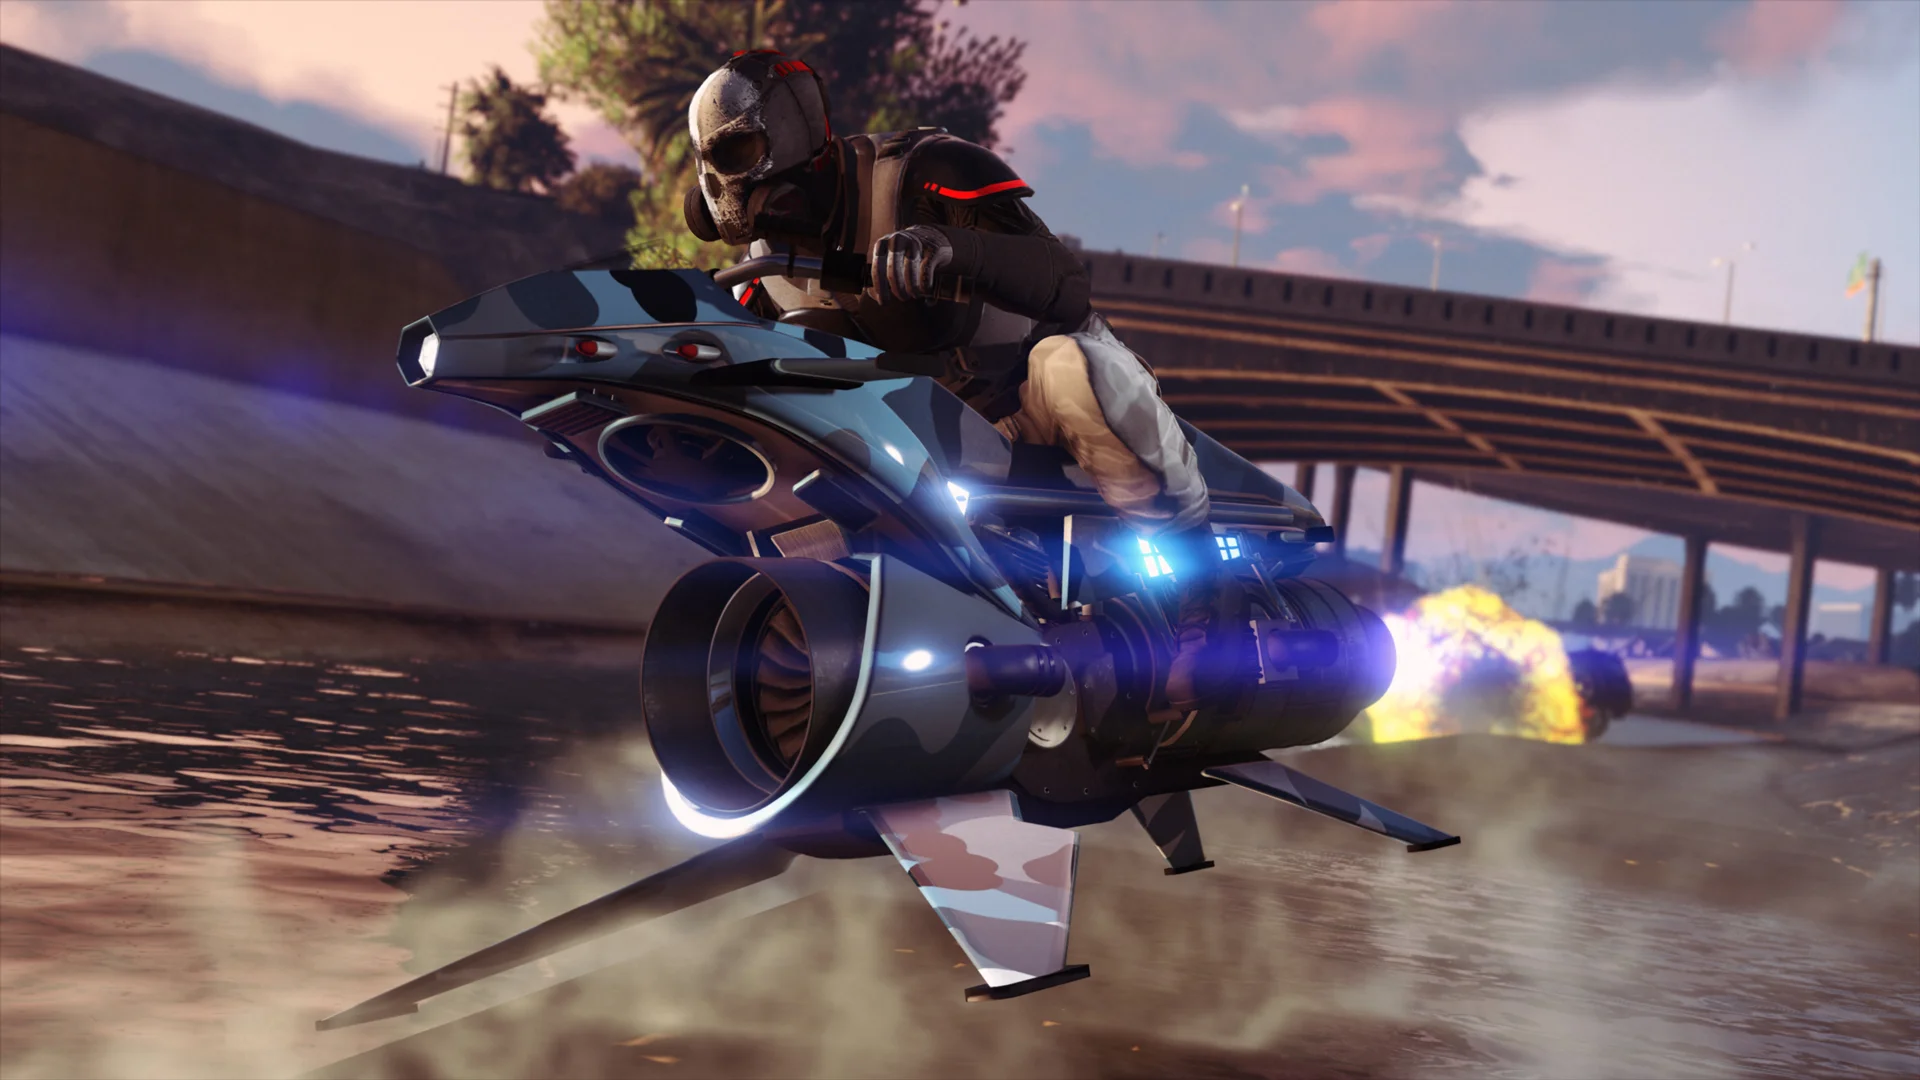 С обновлением GTA Online в игре появятся новые задания и мотоцикл, словно пришедший из Saints Row - фото 2